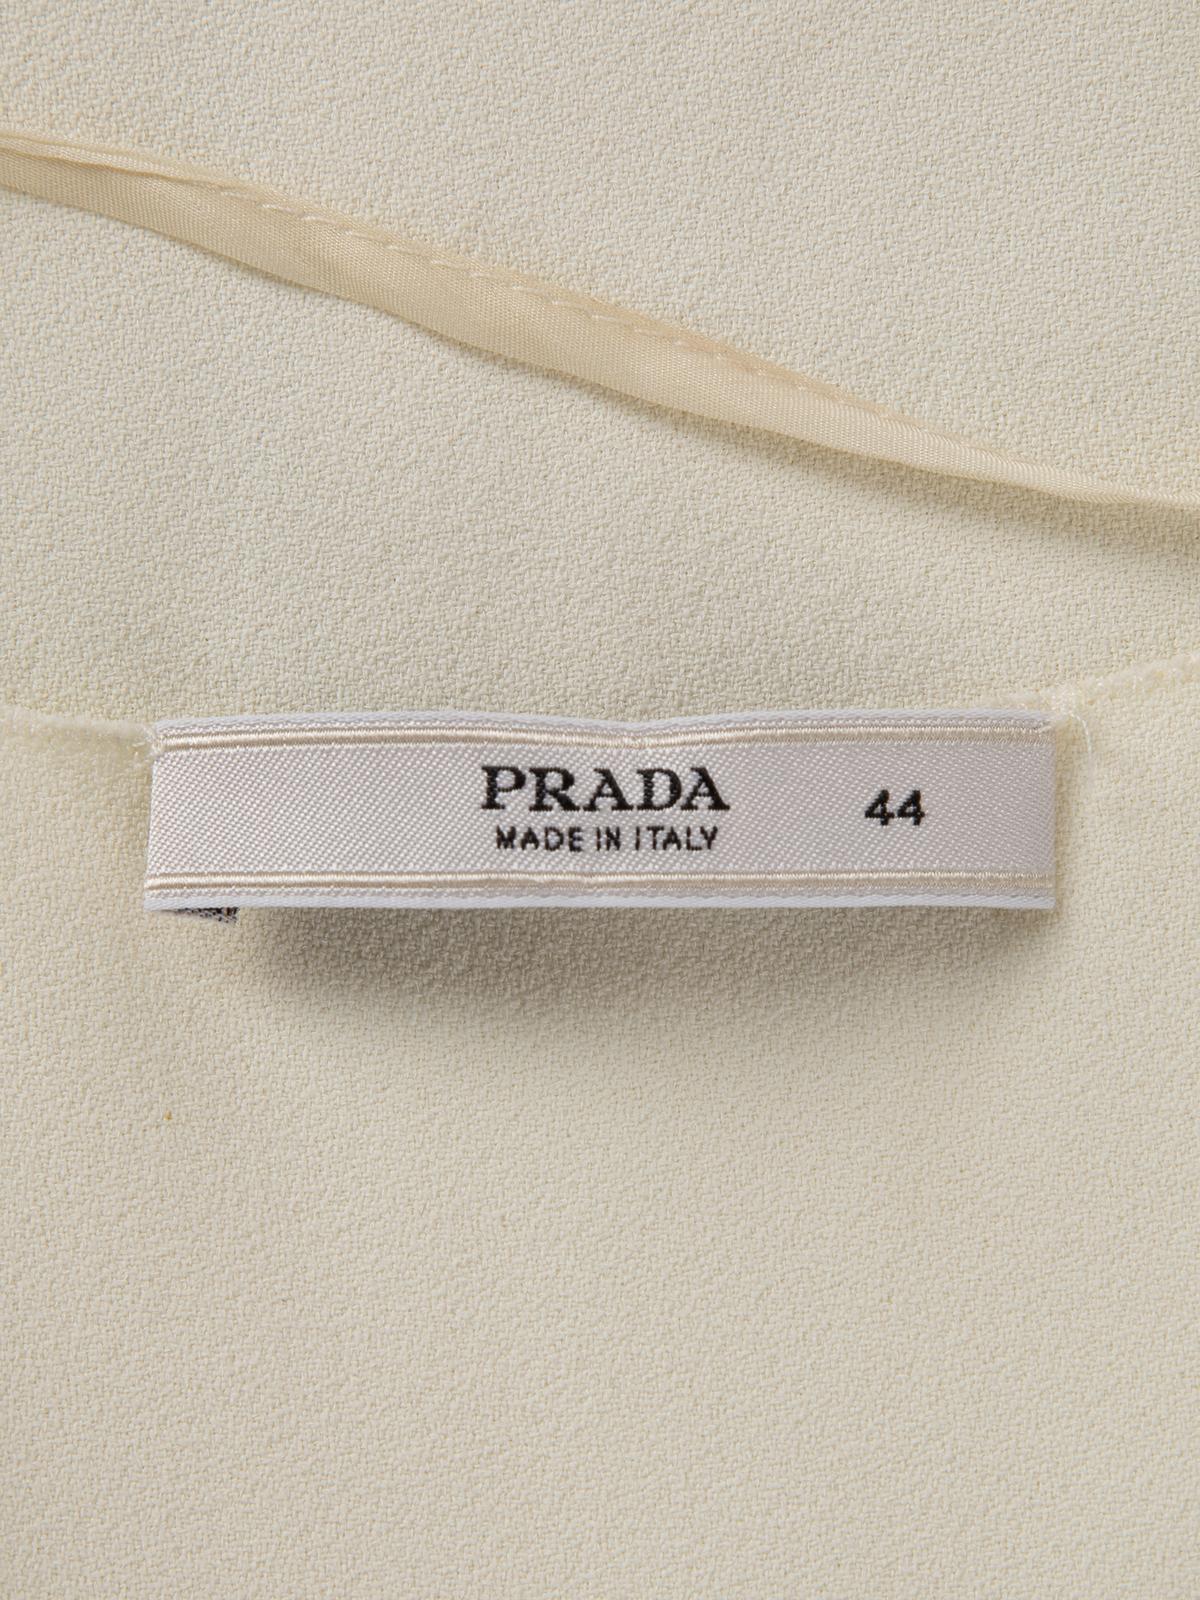 Pre-Loved Prada Women's White Short Sleeve Dress 2